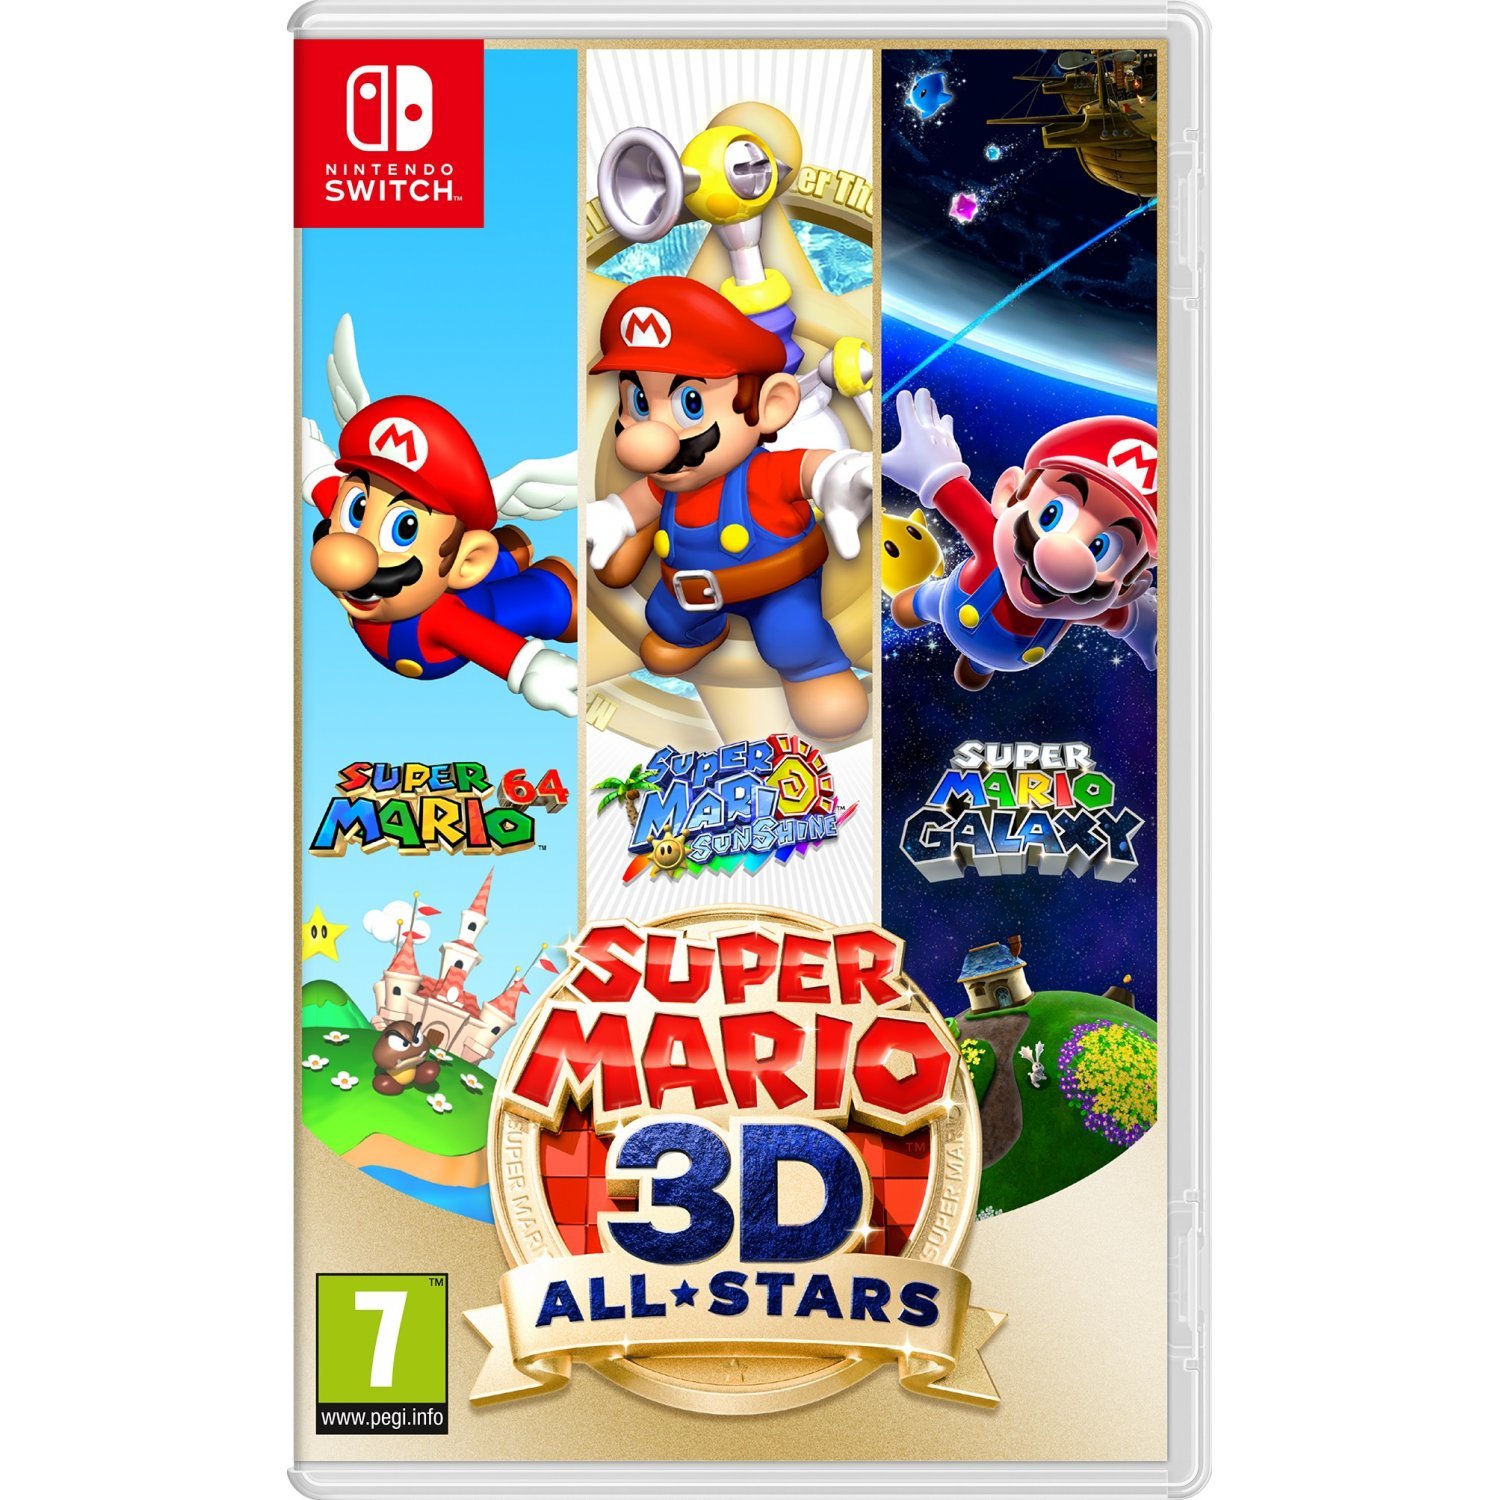 Super Mario 3D All-Stars (UK, SE, DK, FI) - Videospill og konsoller